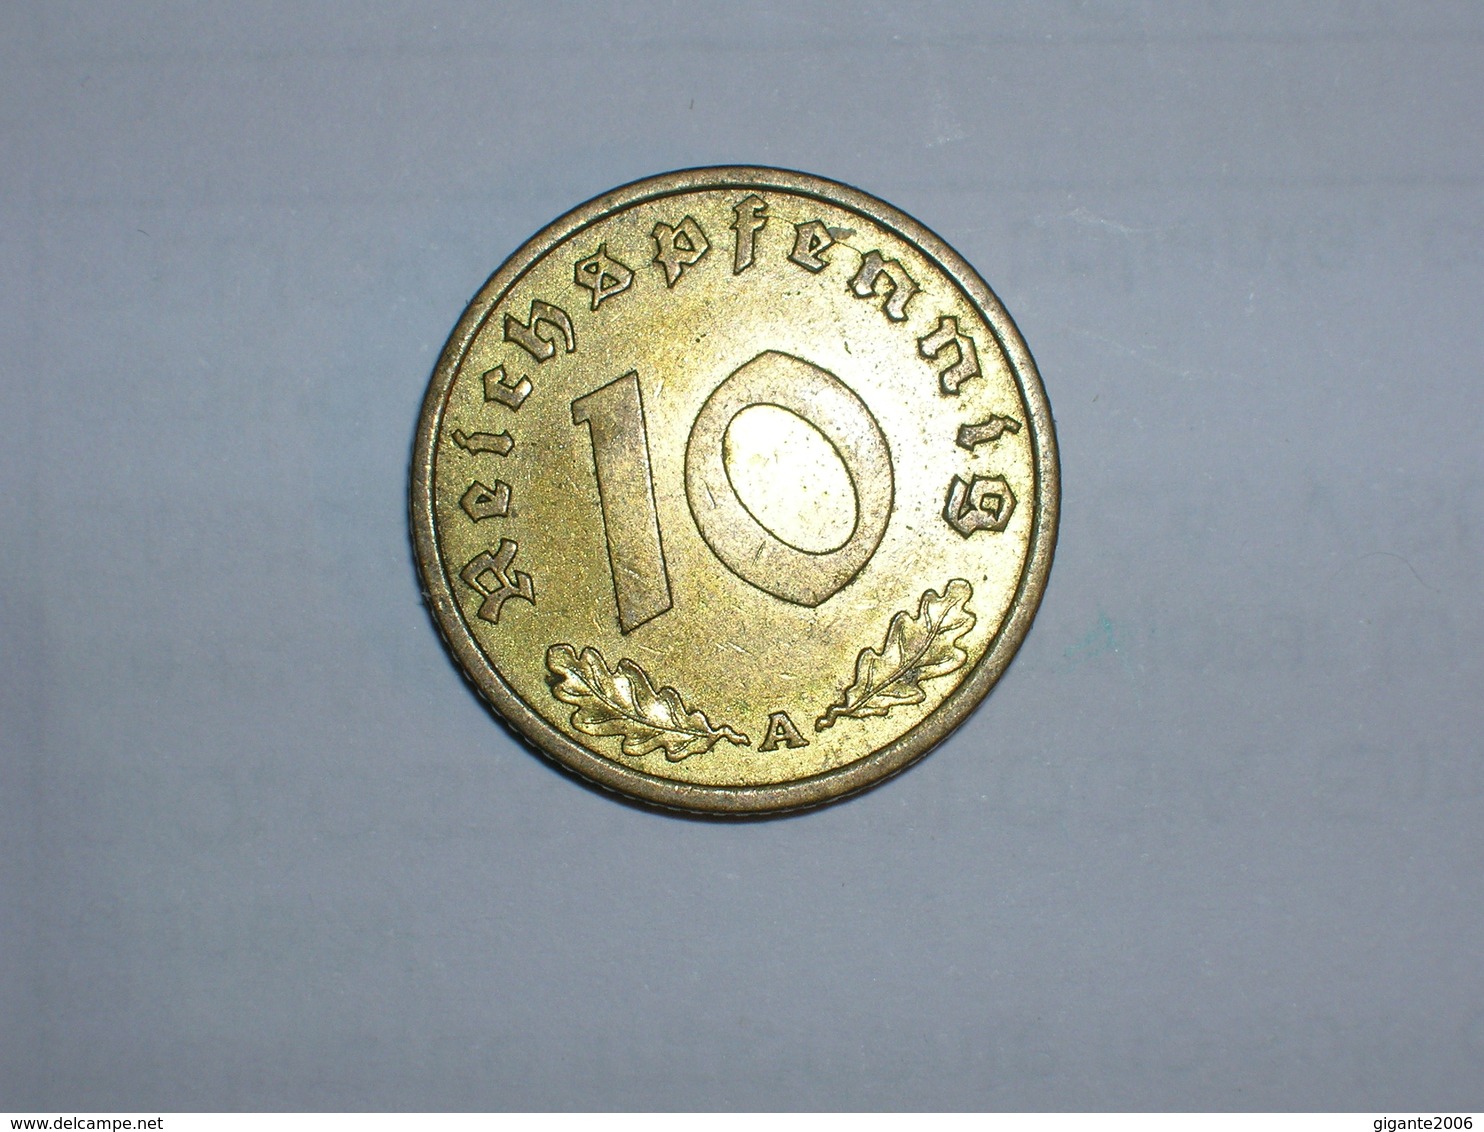 ALEMANIA- 10 PFENNIG 1938 A (917) - 10 Reichspfennig